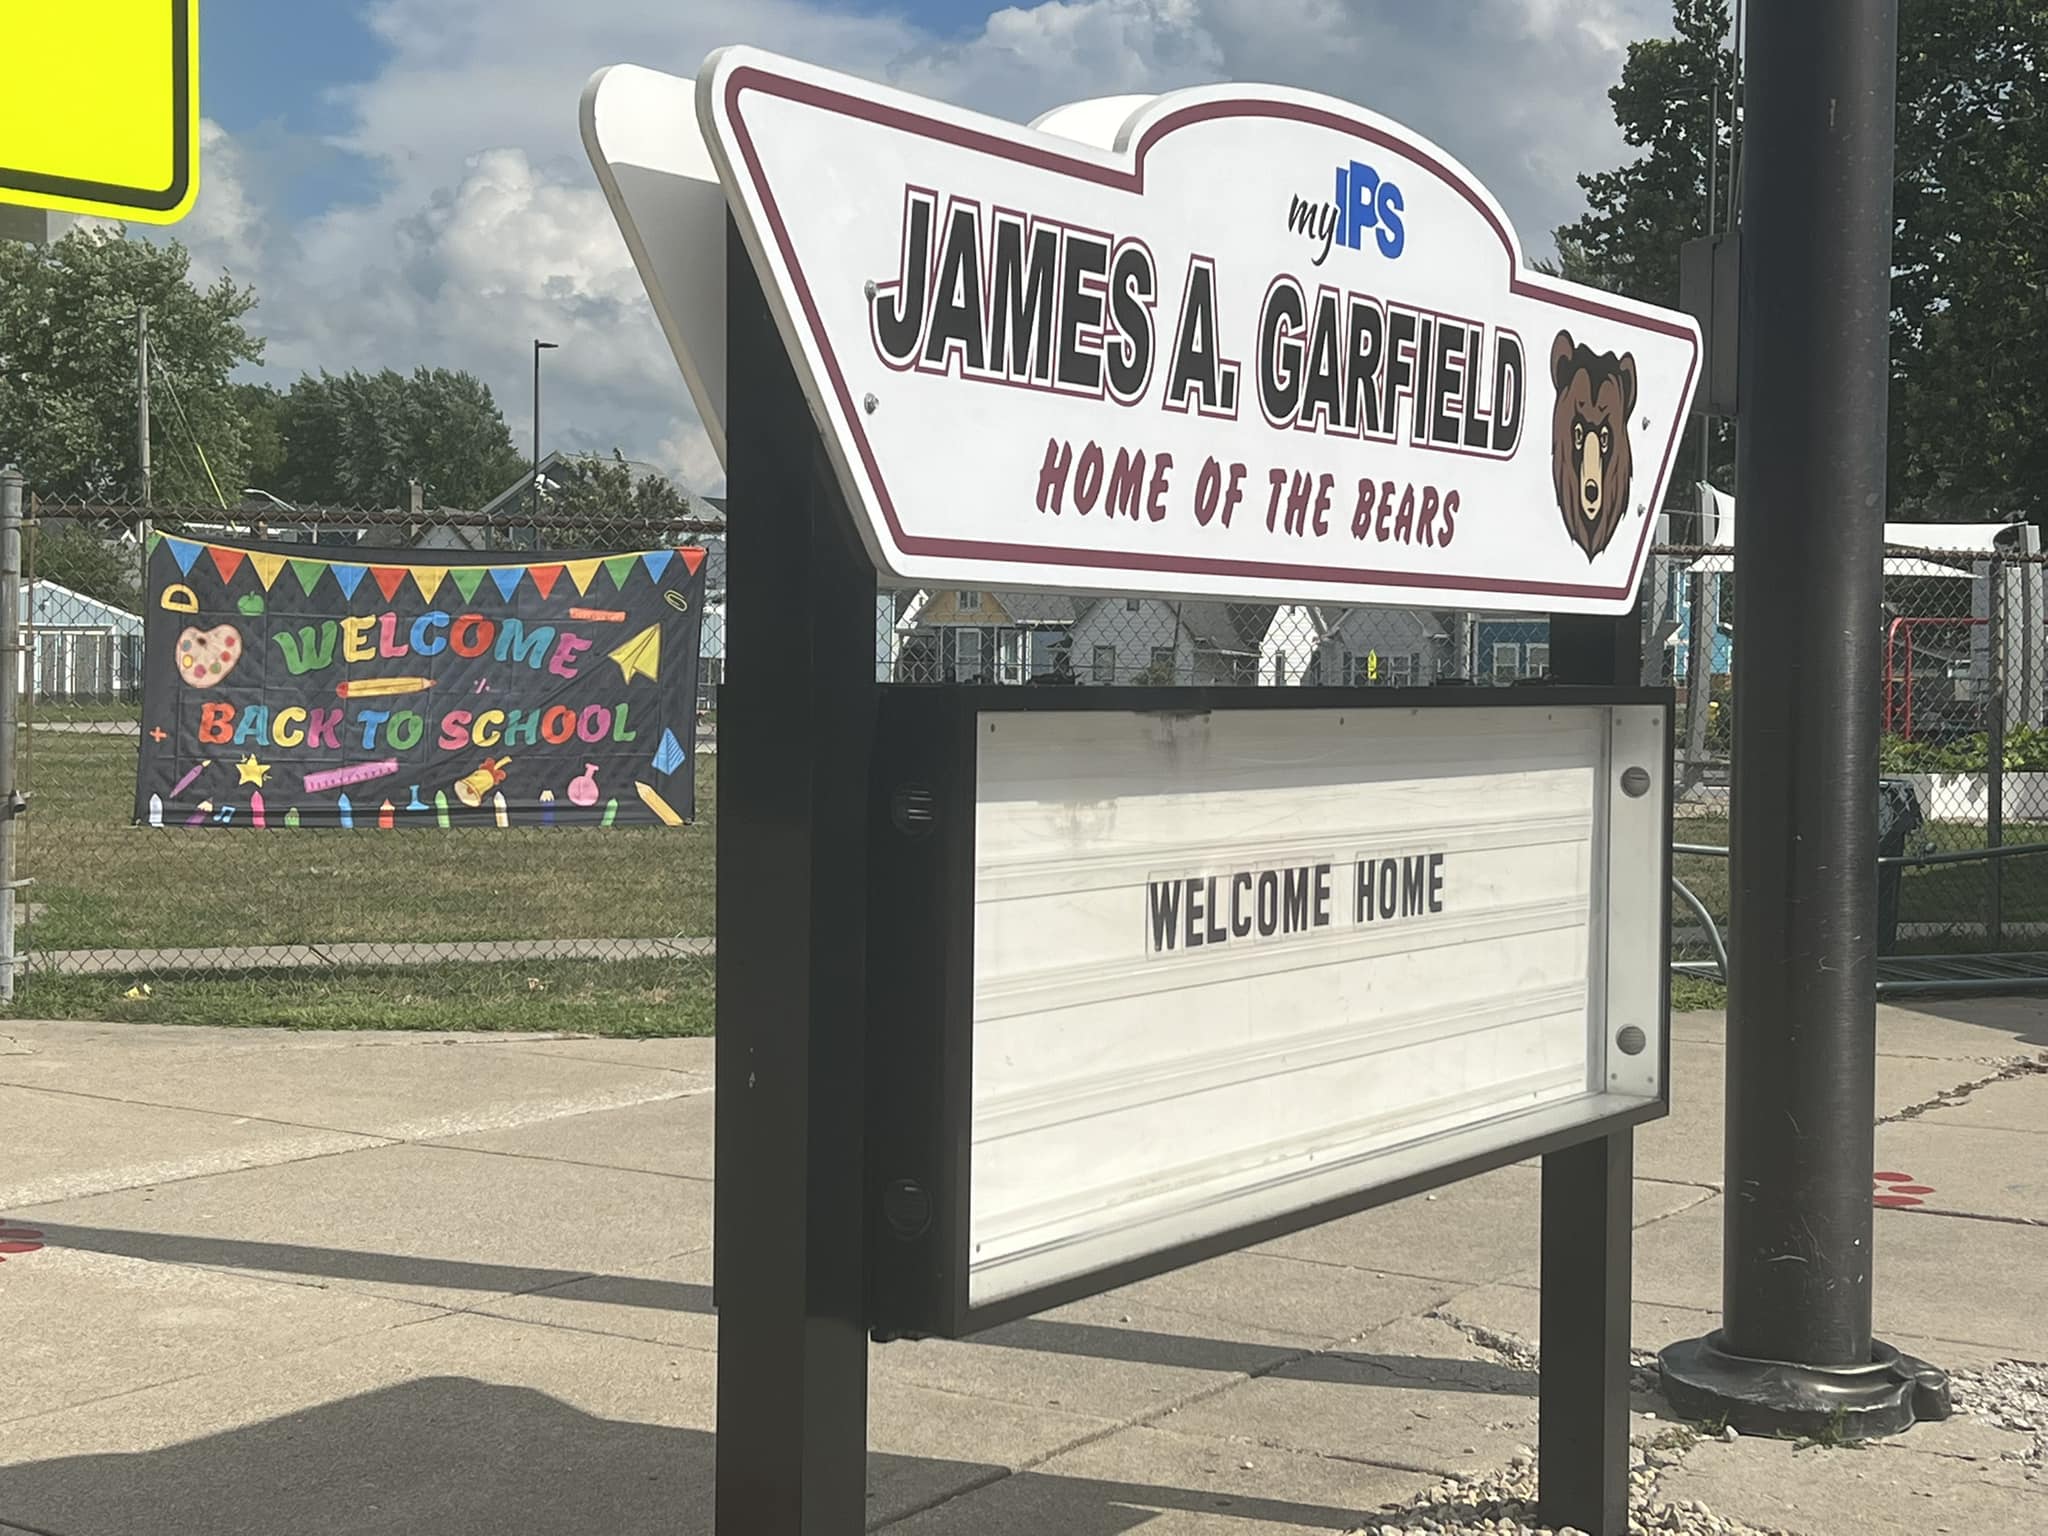 James A. Garfield School: A 100% Decrease in Suspensions